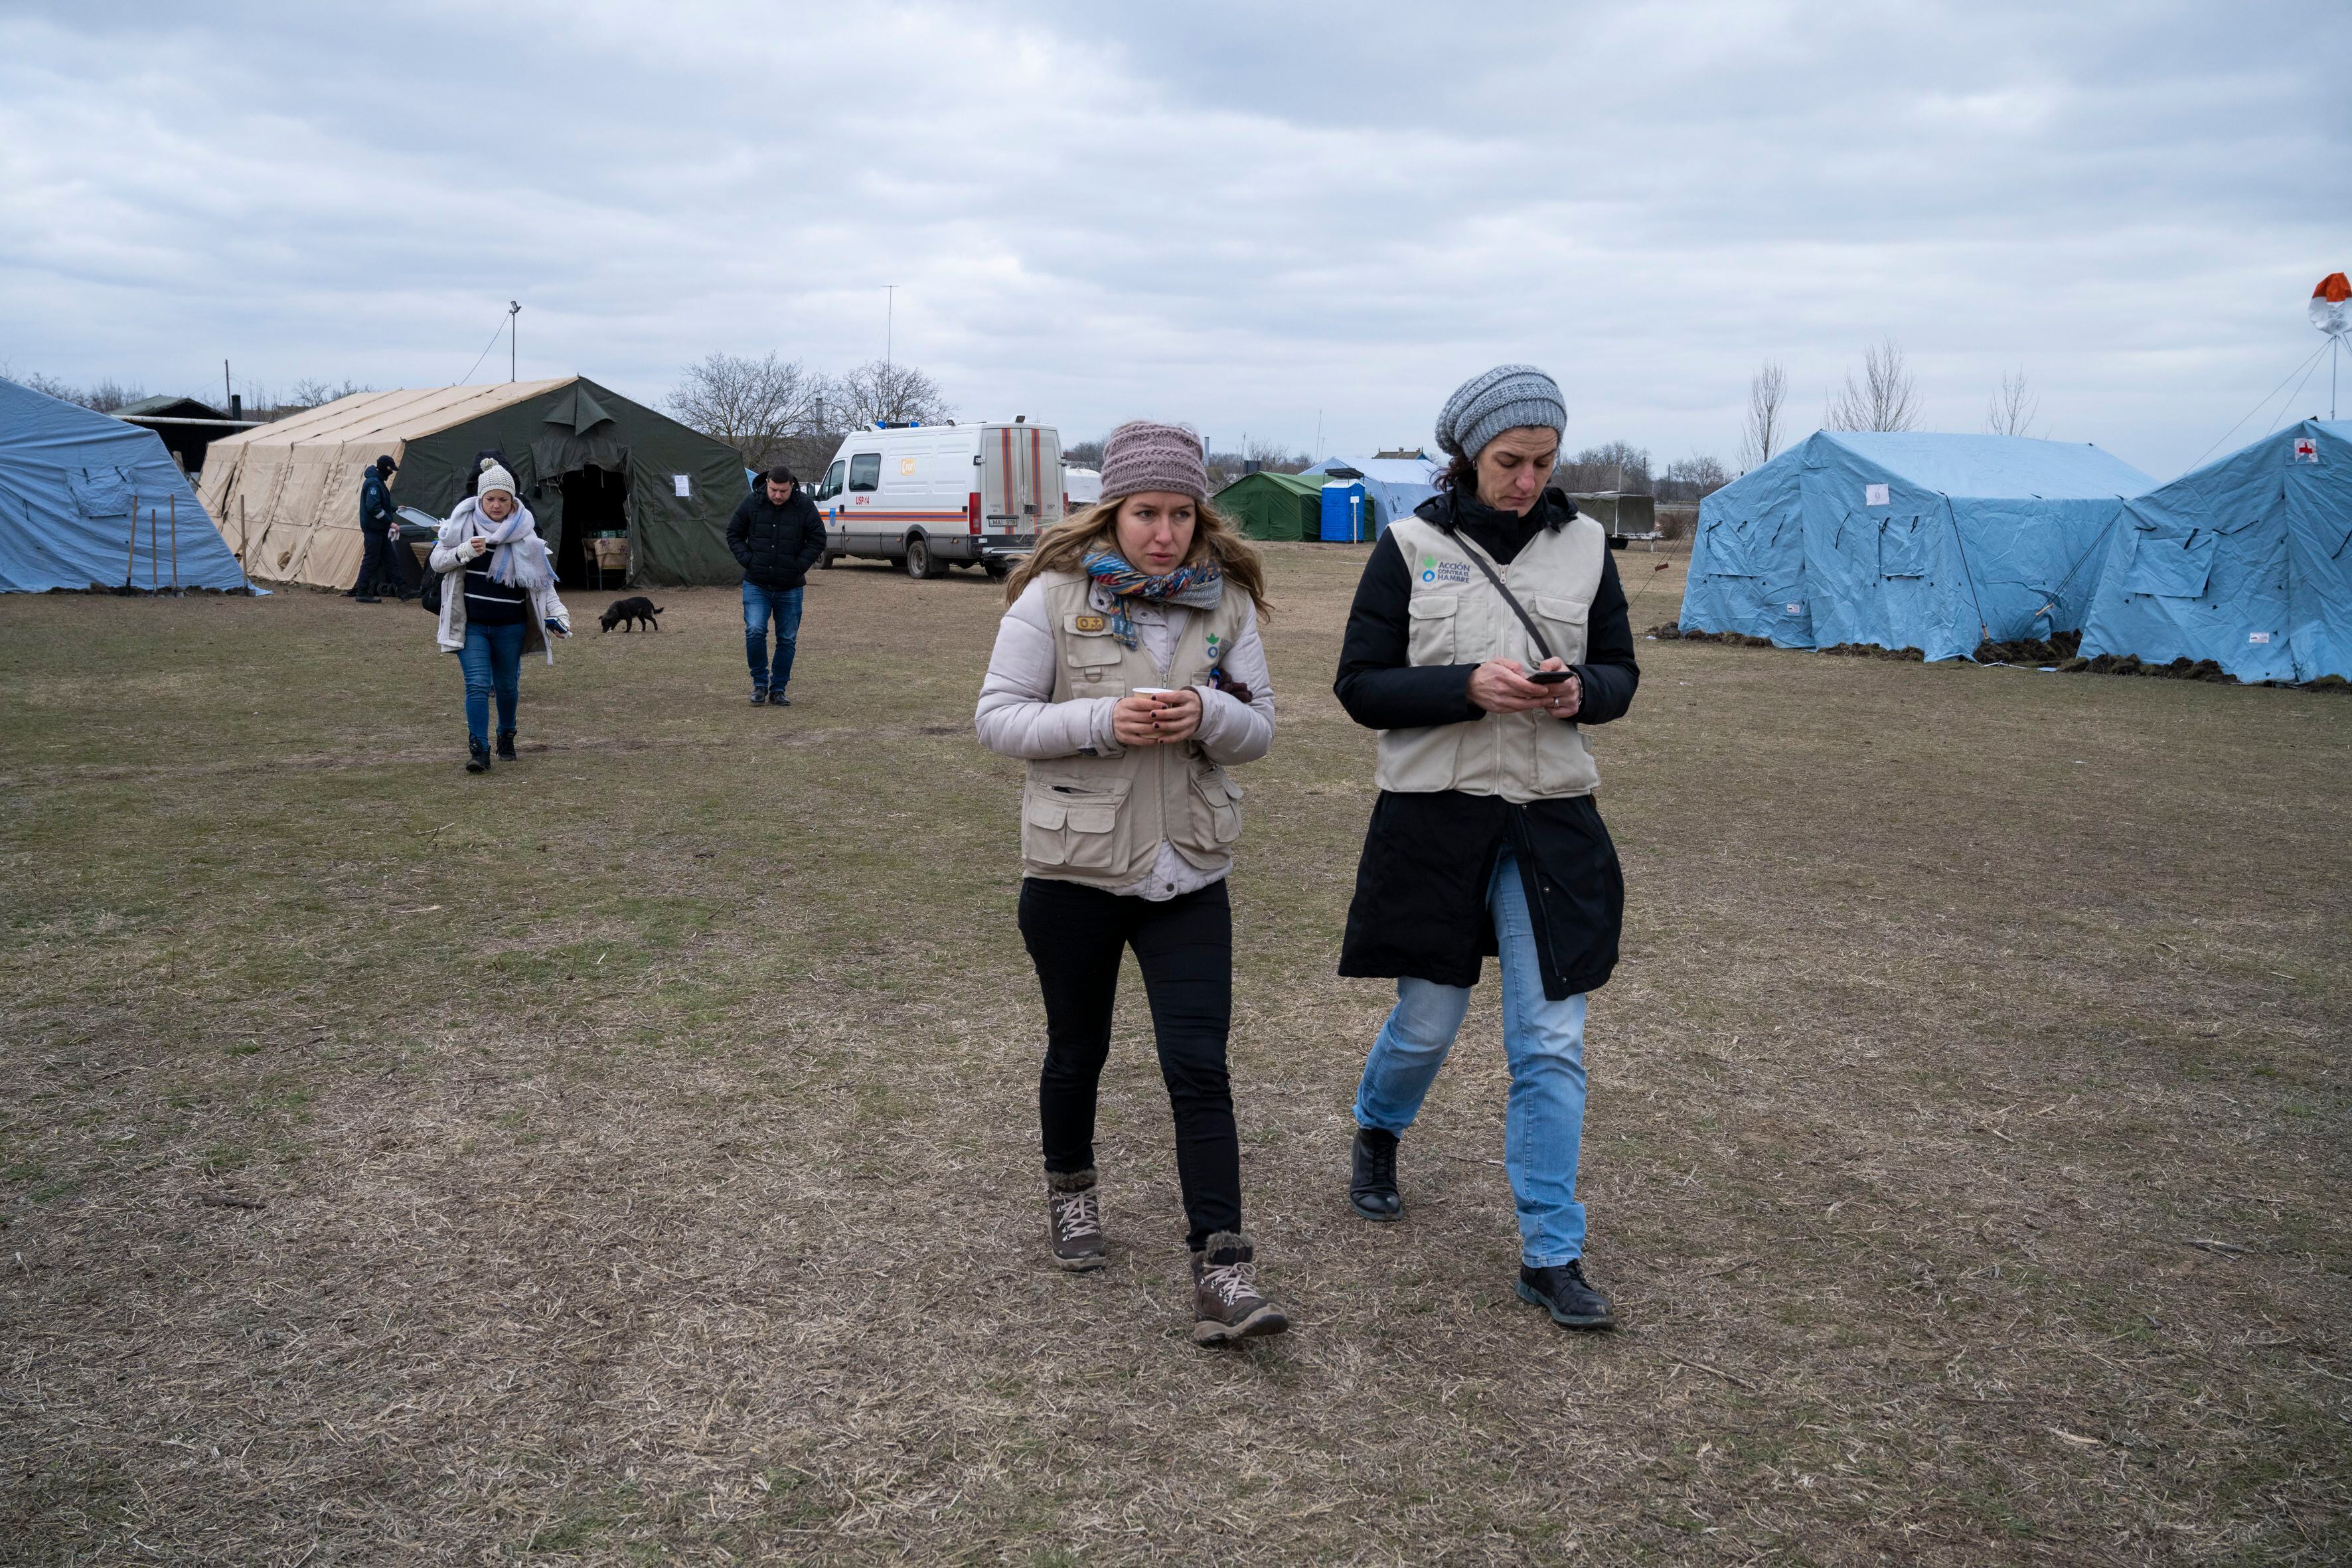 Desde el comienzo de la invasión rusa, miles de ucranianos cruzaban diariamente las fronteras del oeste del país. Cuanto más agresivo se volvía el conflicto en el este de Ucrania, mayor era el flujo de refugiados. A escasos kilómetros del punto fronterizo, el gobierno moldavo instaló un centro de crisis donde los refugiados pasaban las primeras 72 horas. En la imagen, Noelia Monge y Janire Zulaika, miembros del equipo de emergencias de Acción contra el Hambre, visitaban el 5 de marzo el centro para analizar las necesidades y los espacios sobre los que llevar a cabo la intervención humanitaria.